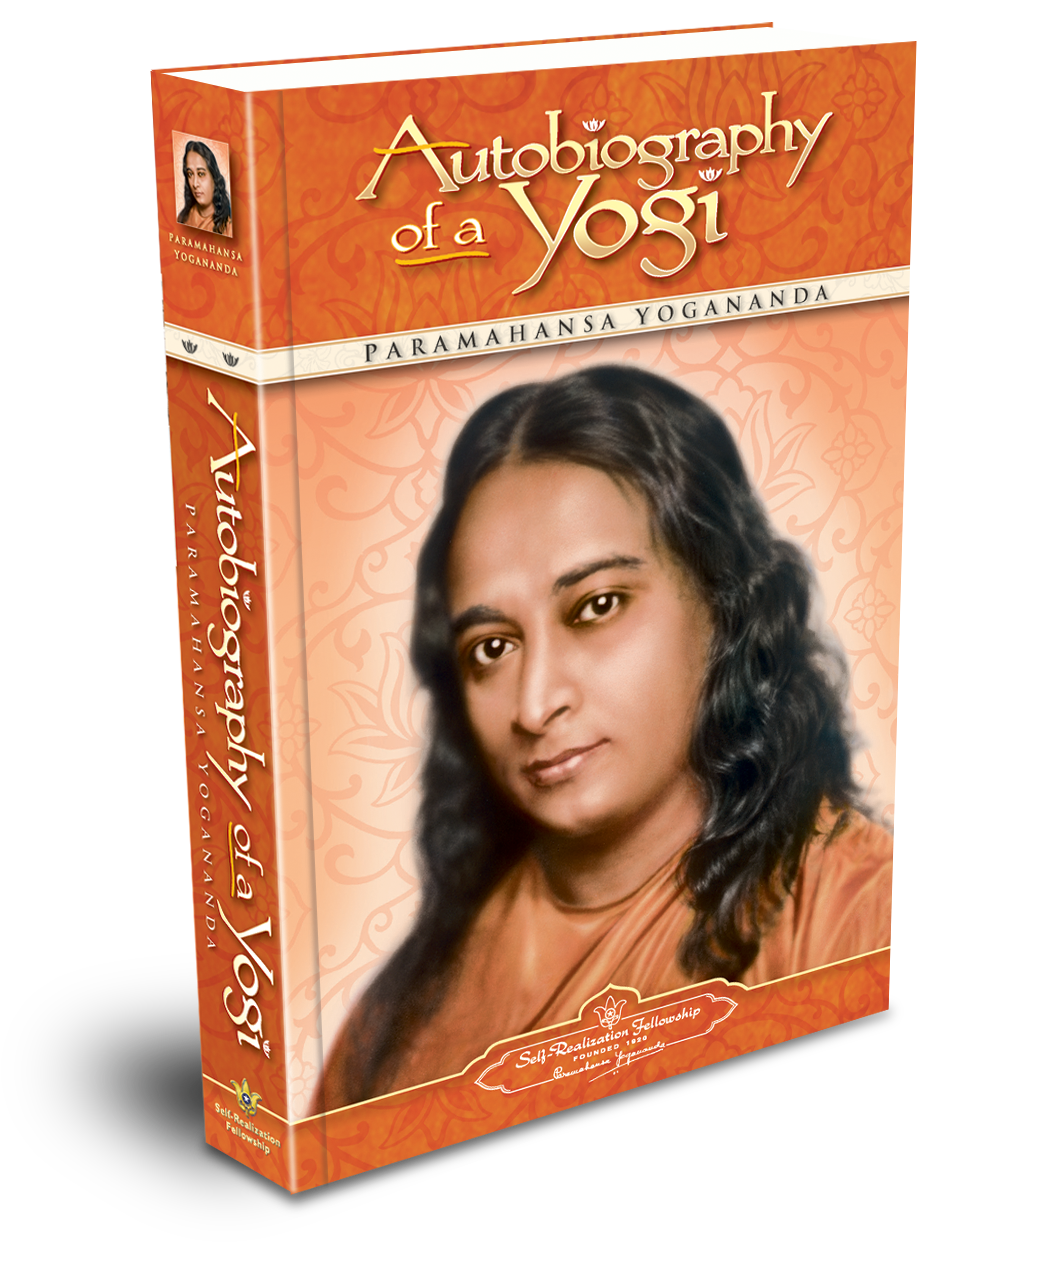 Книга парамахансы йогананды автобиография йога